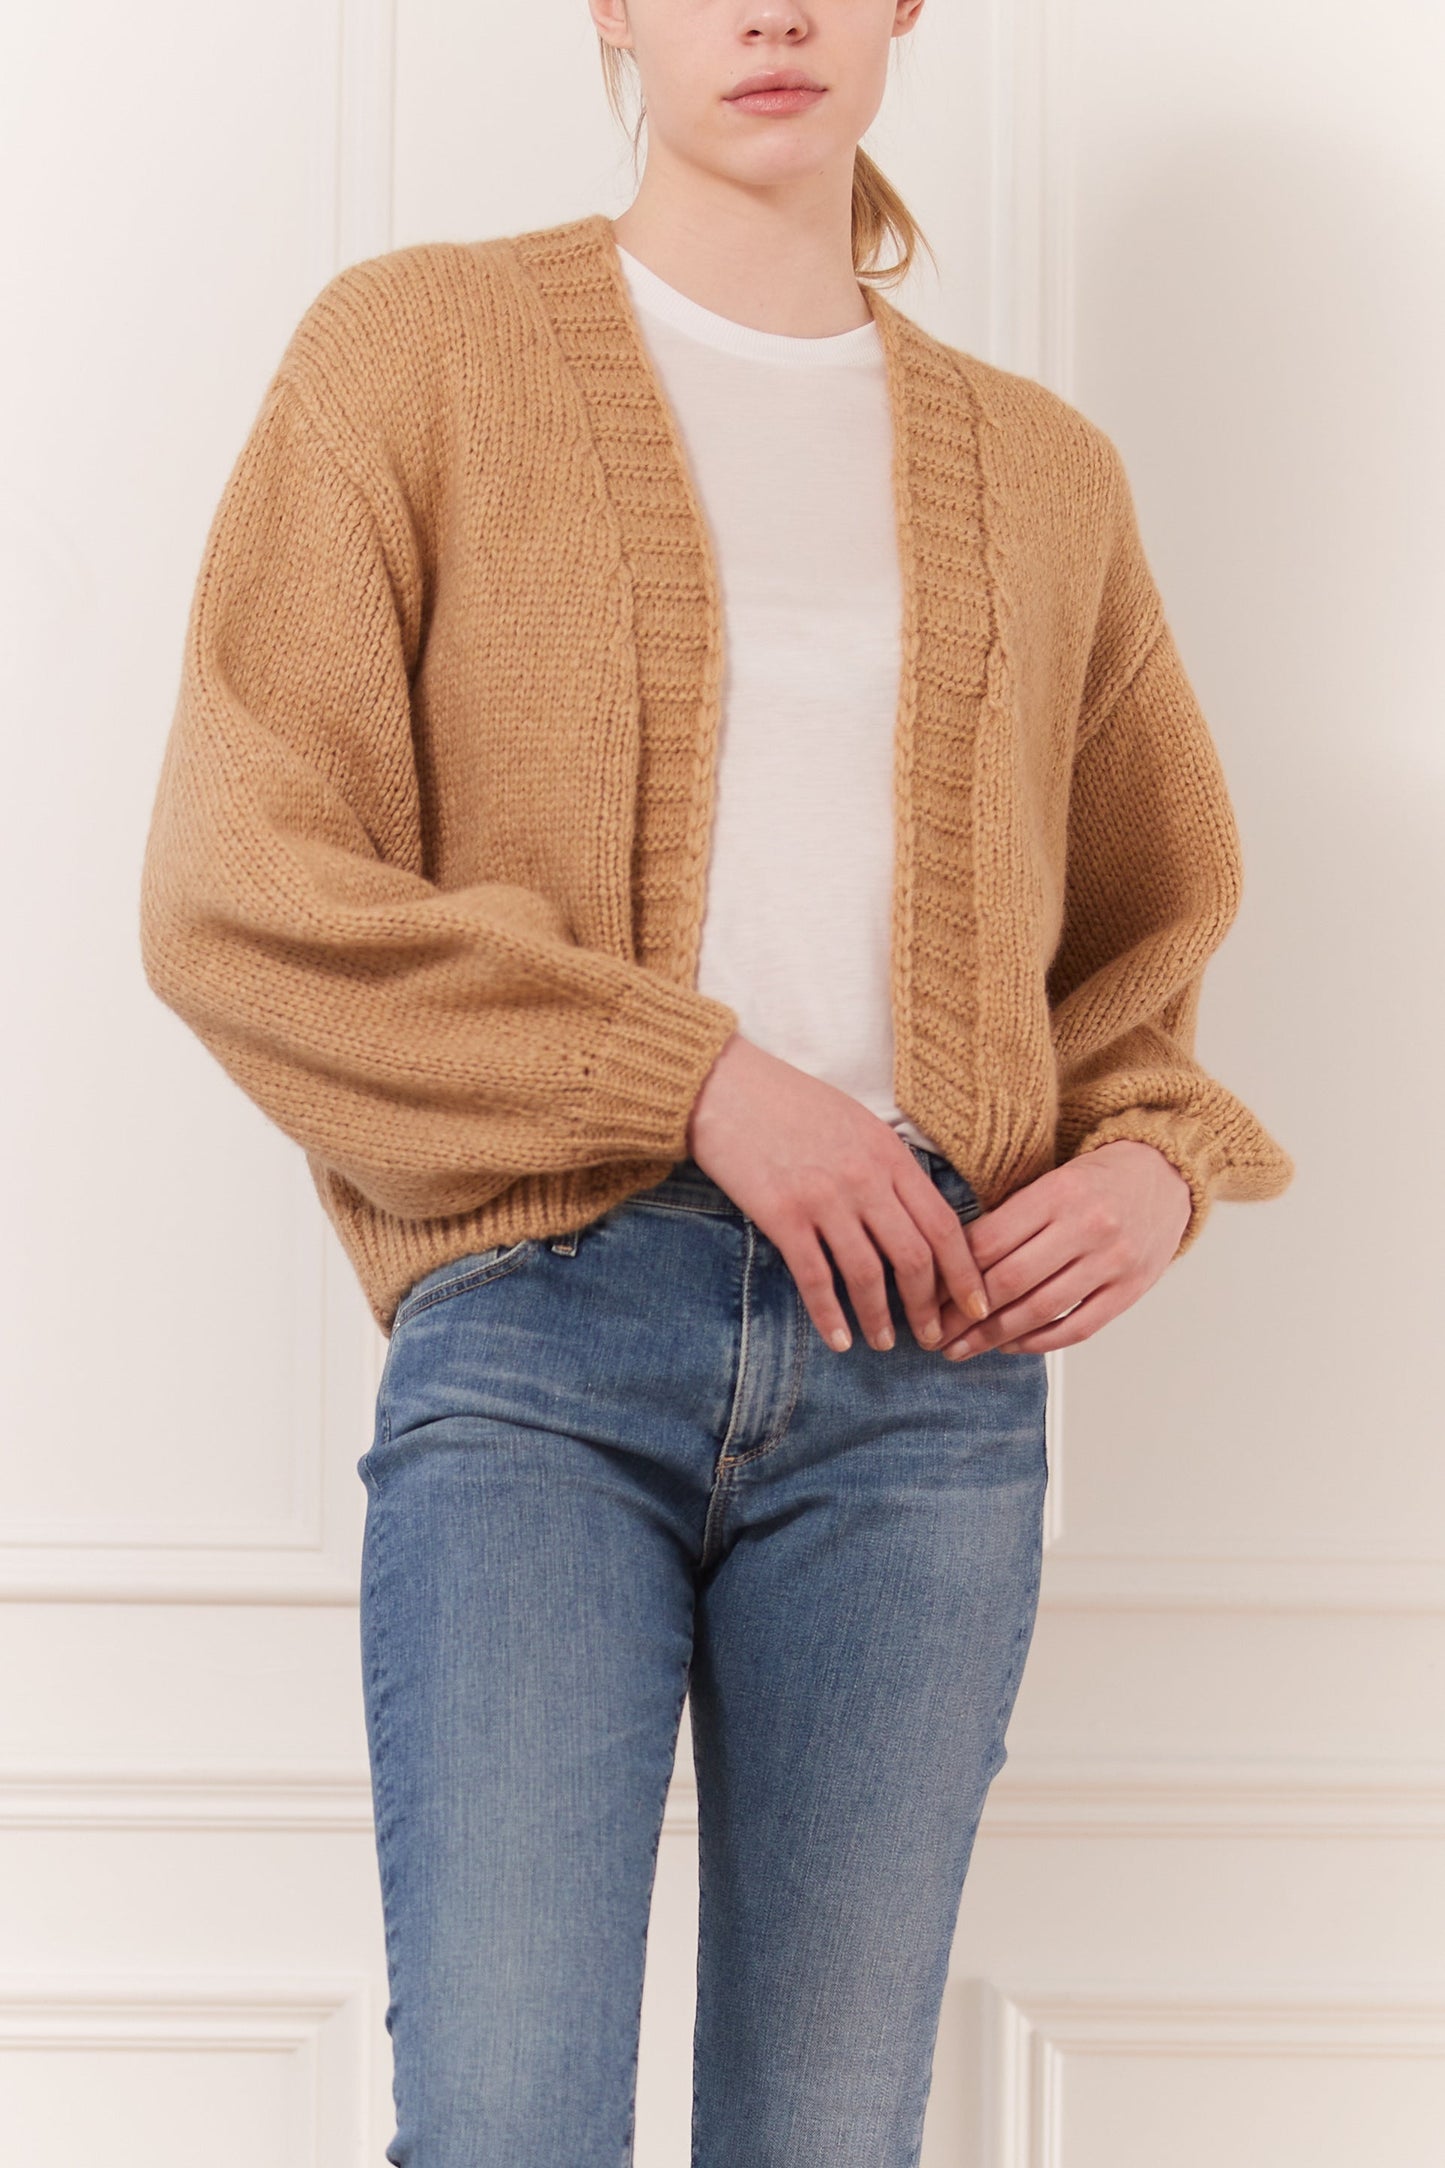 Oversize cardigan sweater